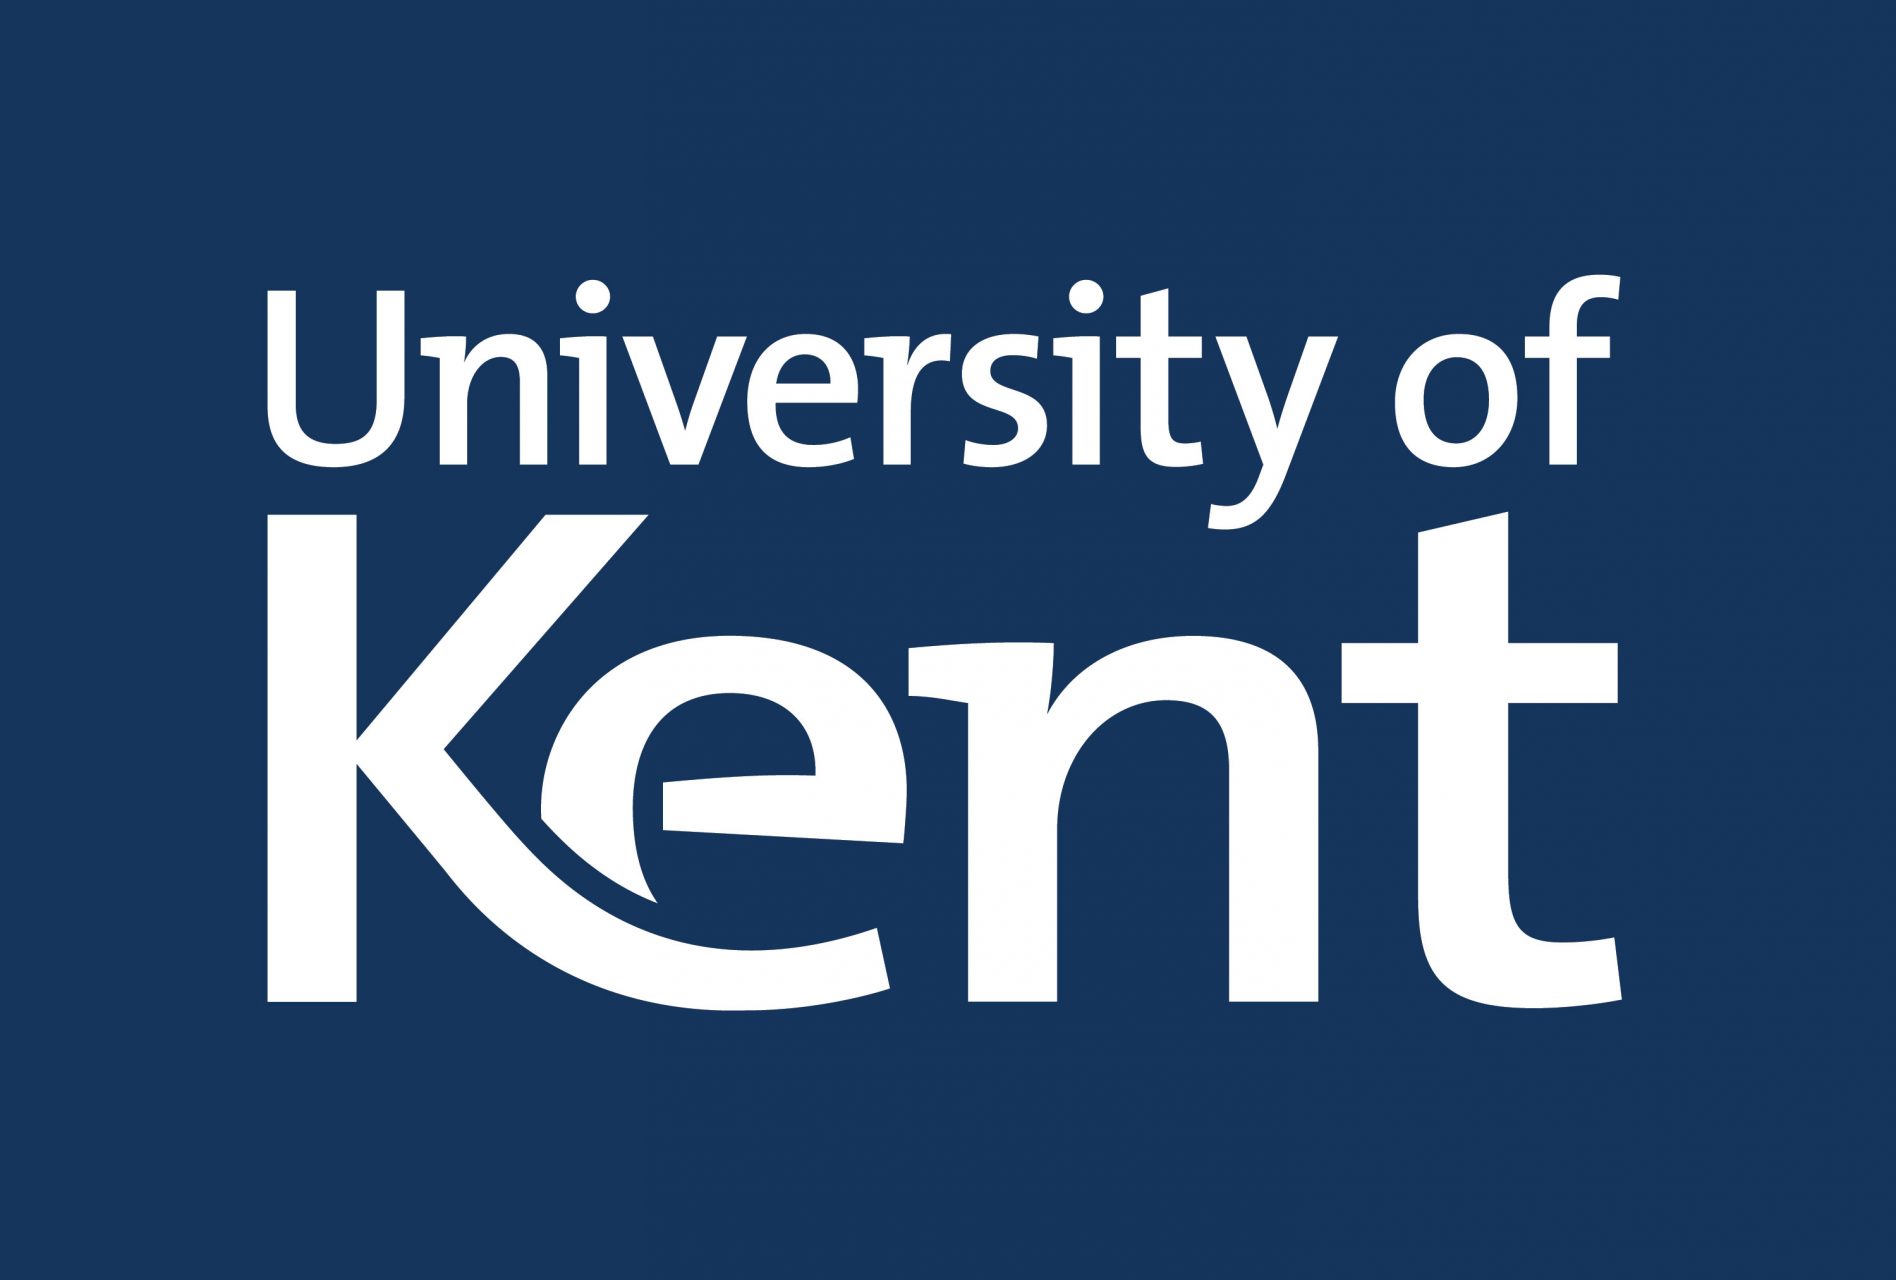 cover letter university of kent